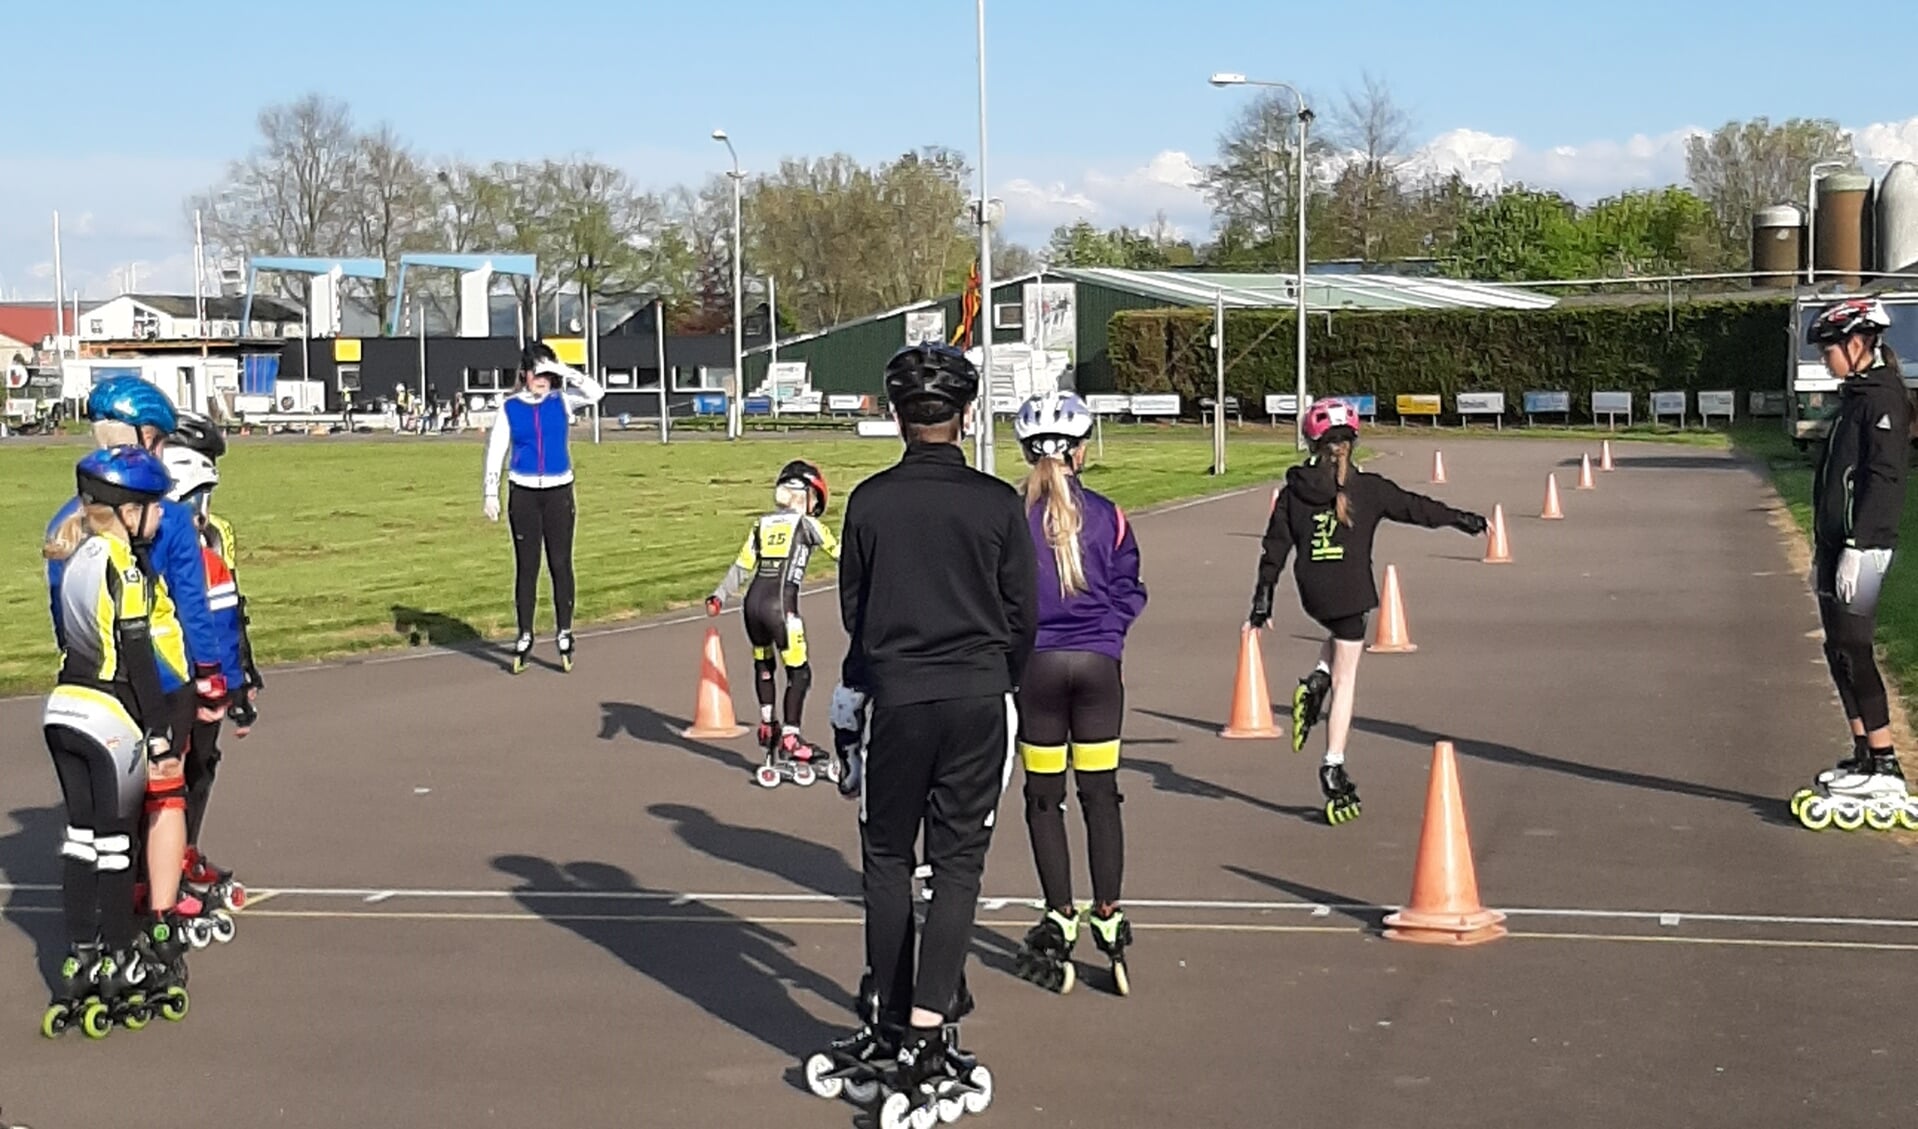 Skeeleren leren bij Radboud Inline-skating in gemeente Medemblik | het nieuws uit Medemblik